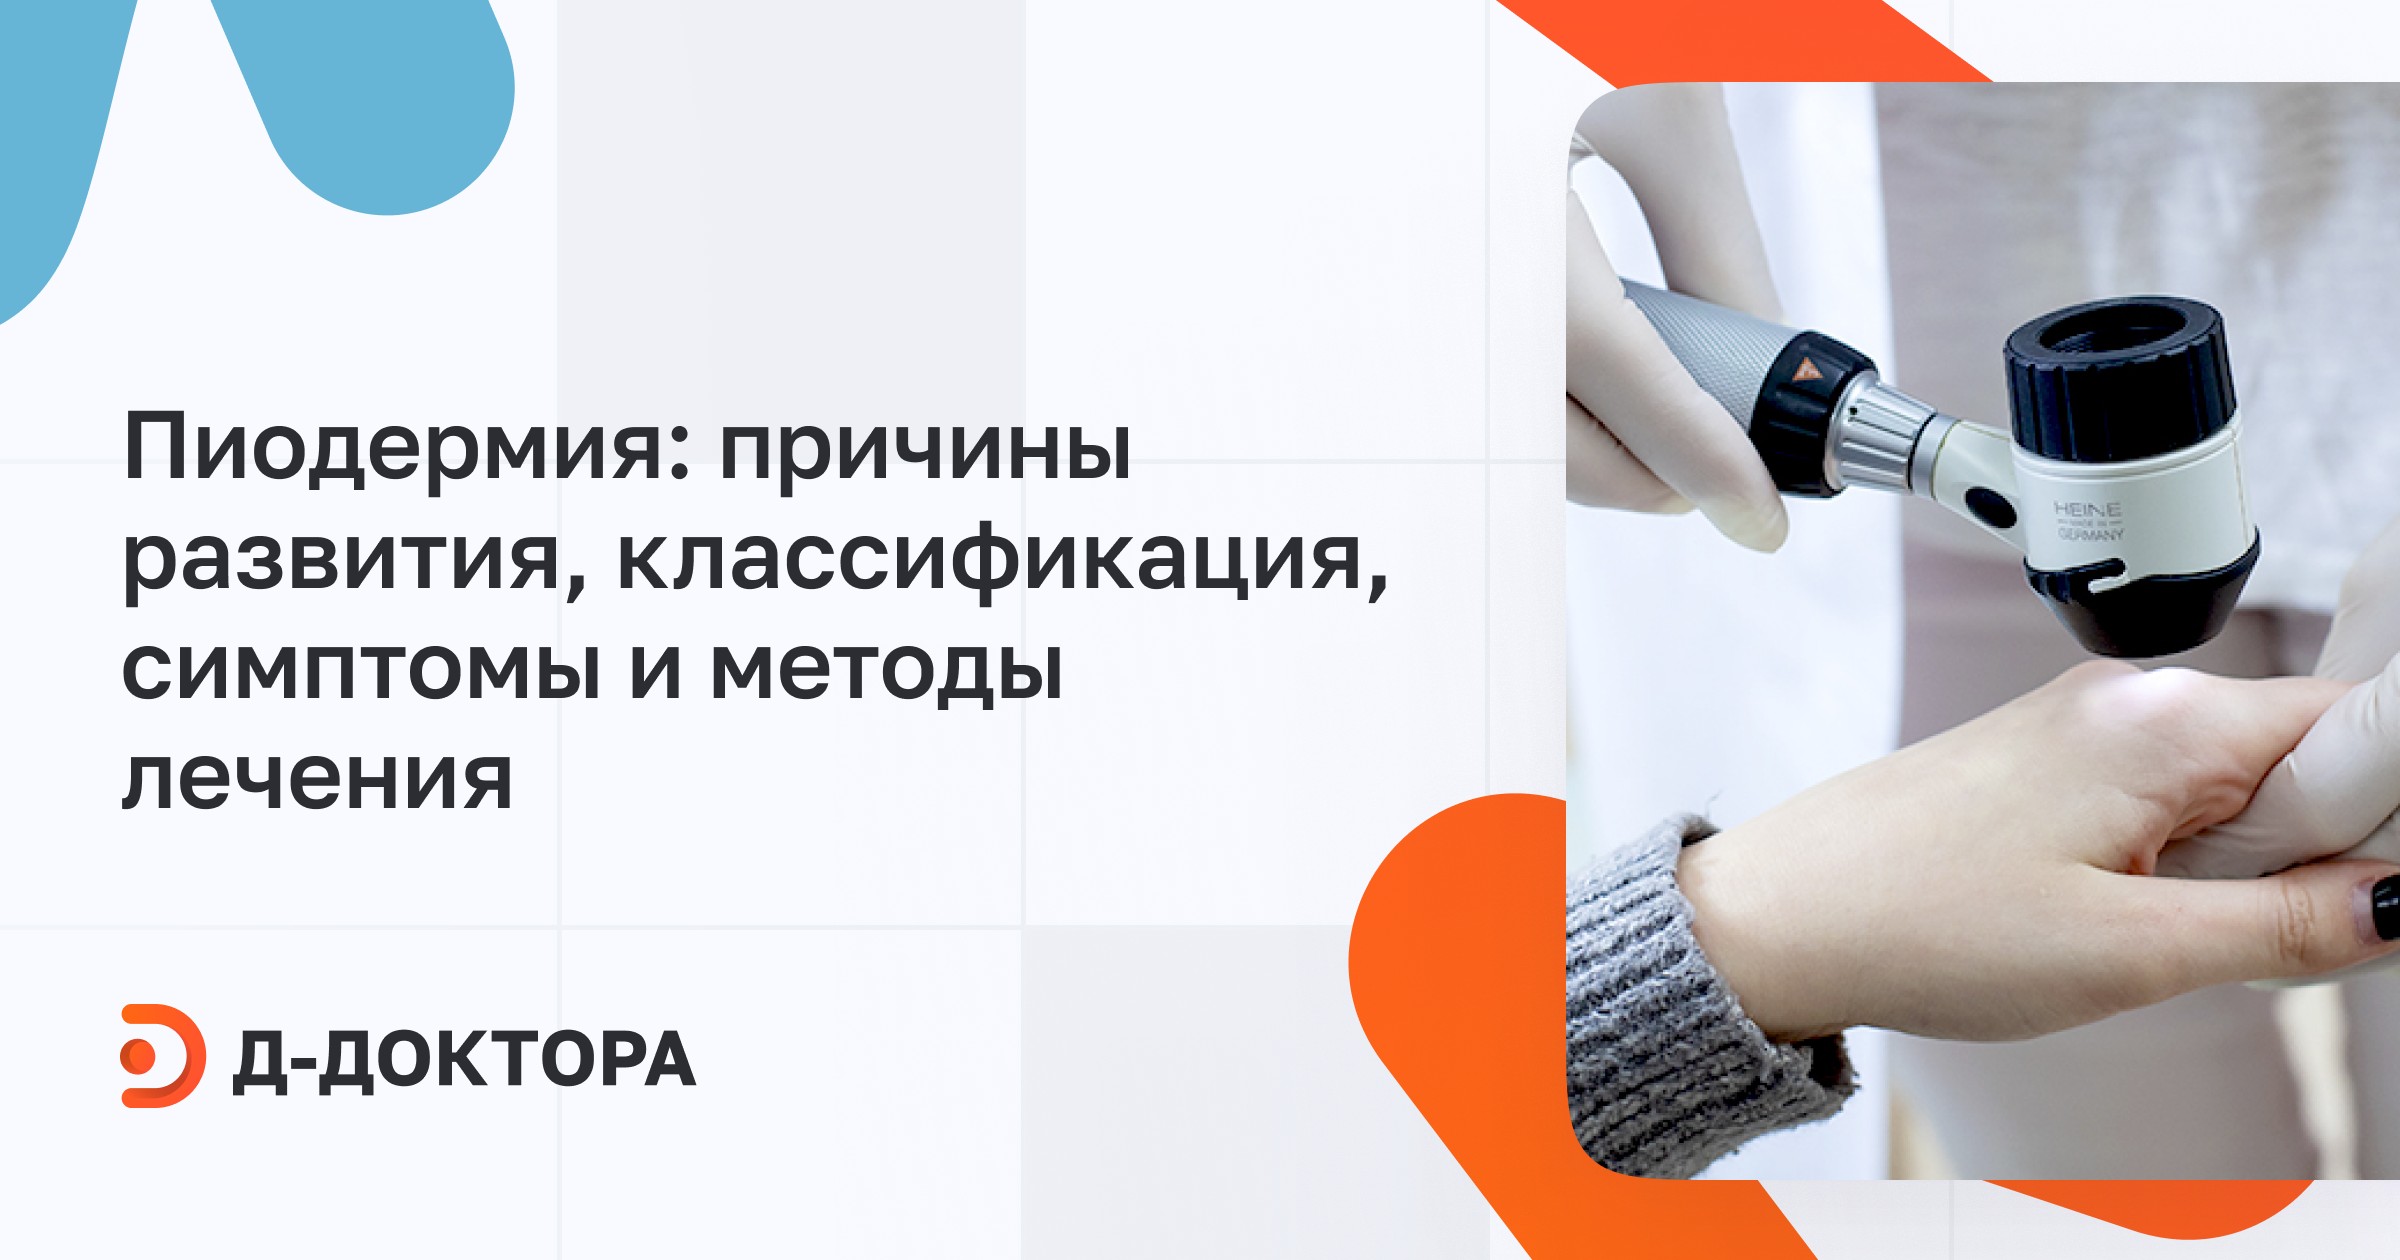 Лечение пиодермии и диагностика в Москве по выгодной цене